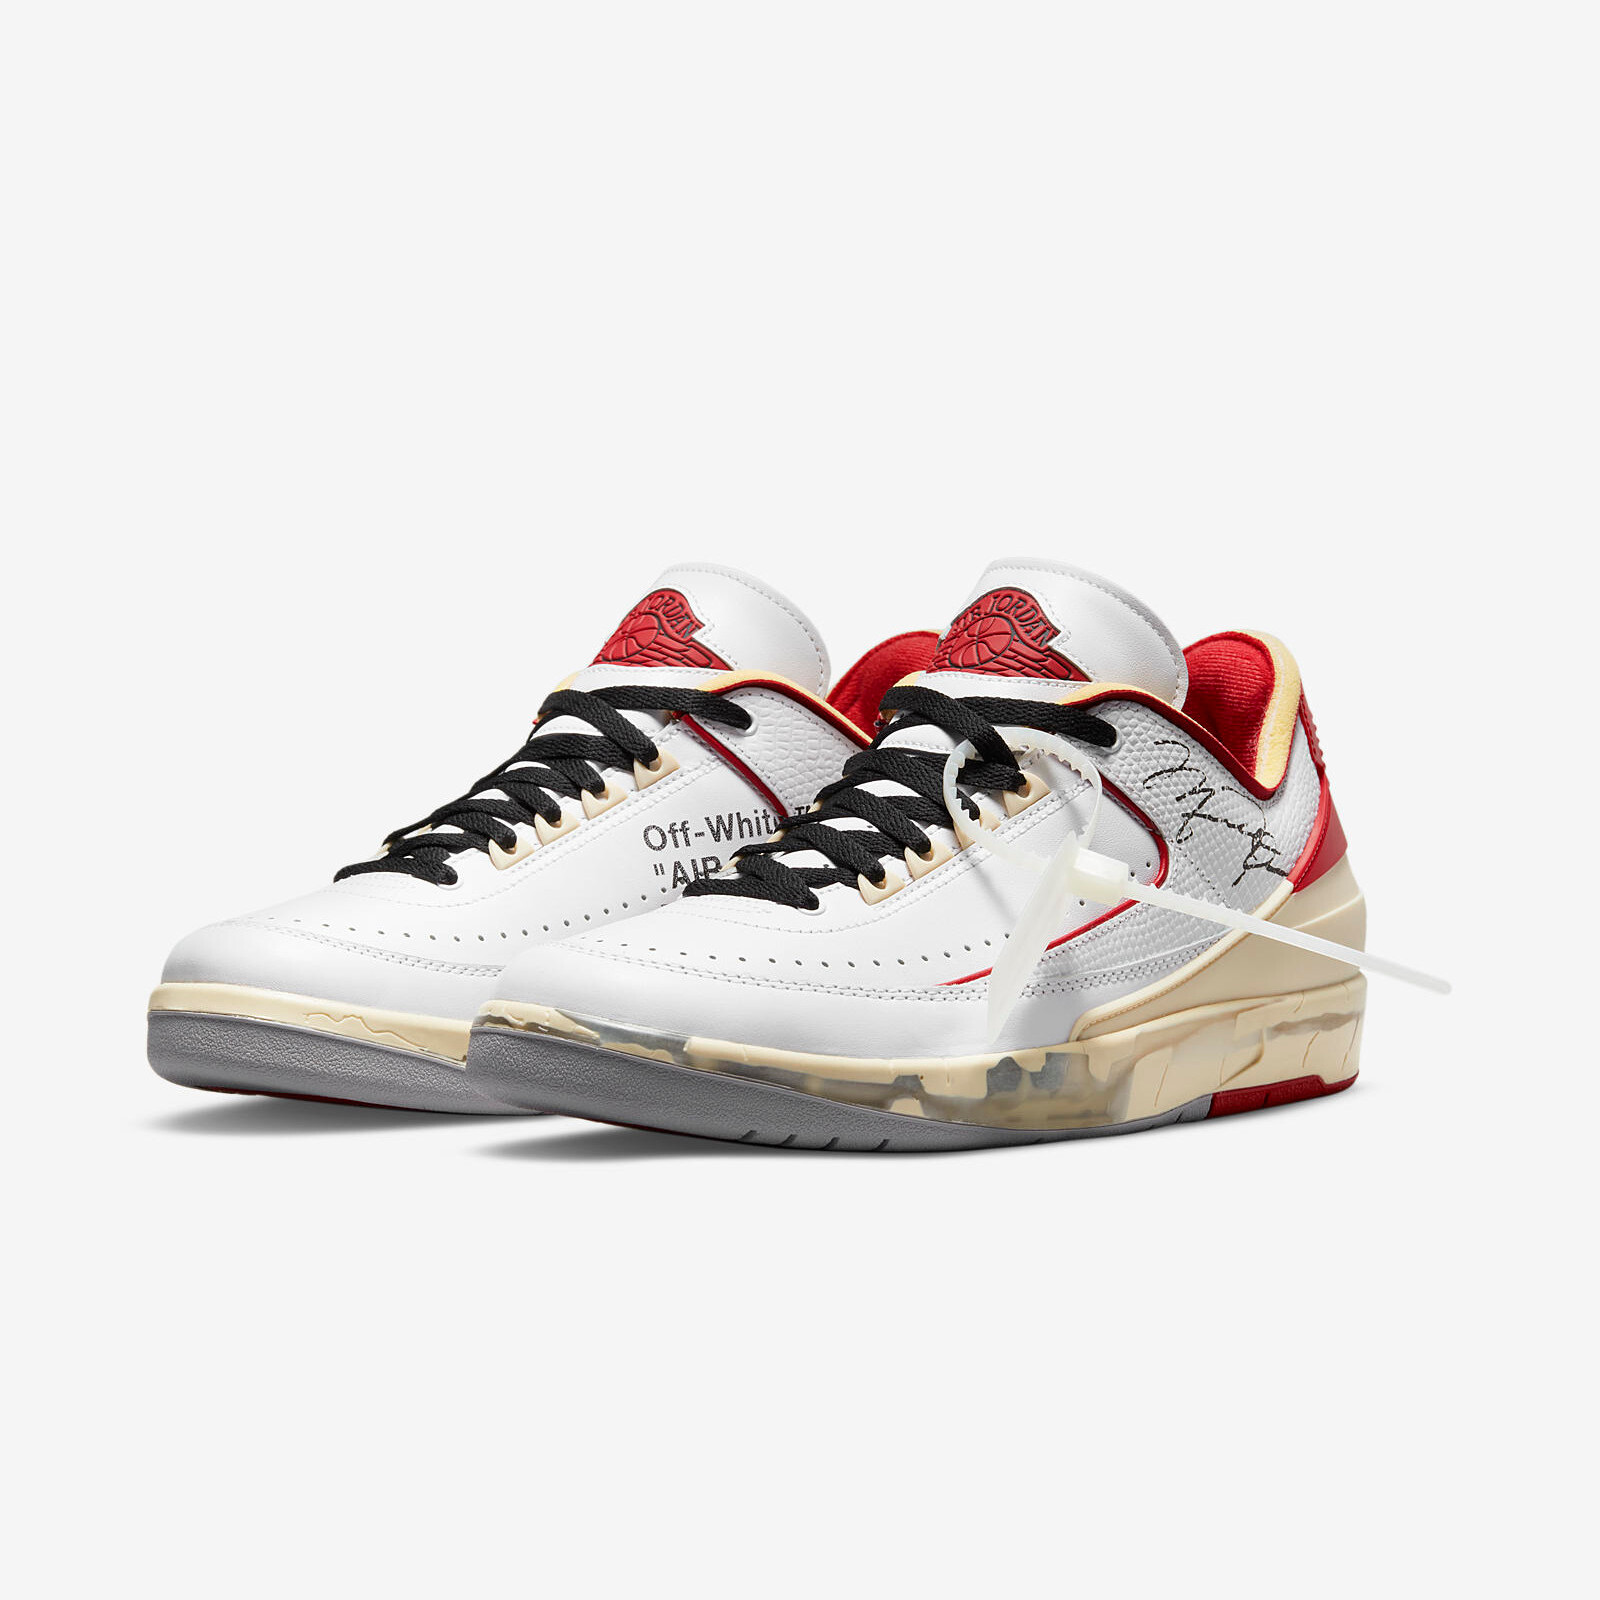 Nike x Off-White
Air Jordan 2 Low
White / Varsity Red